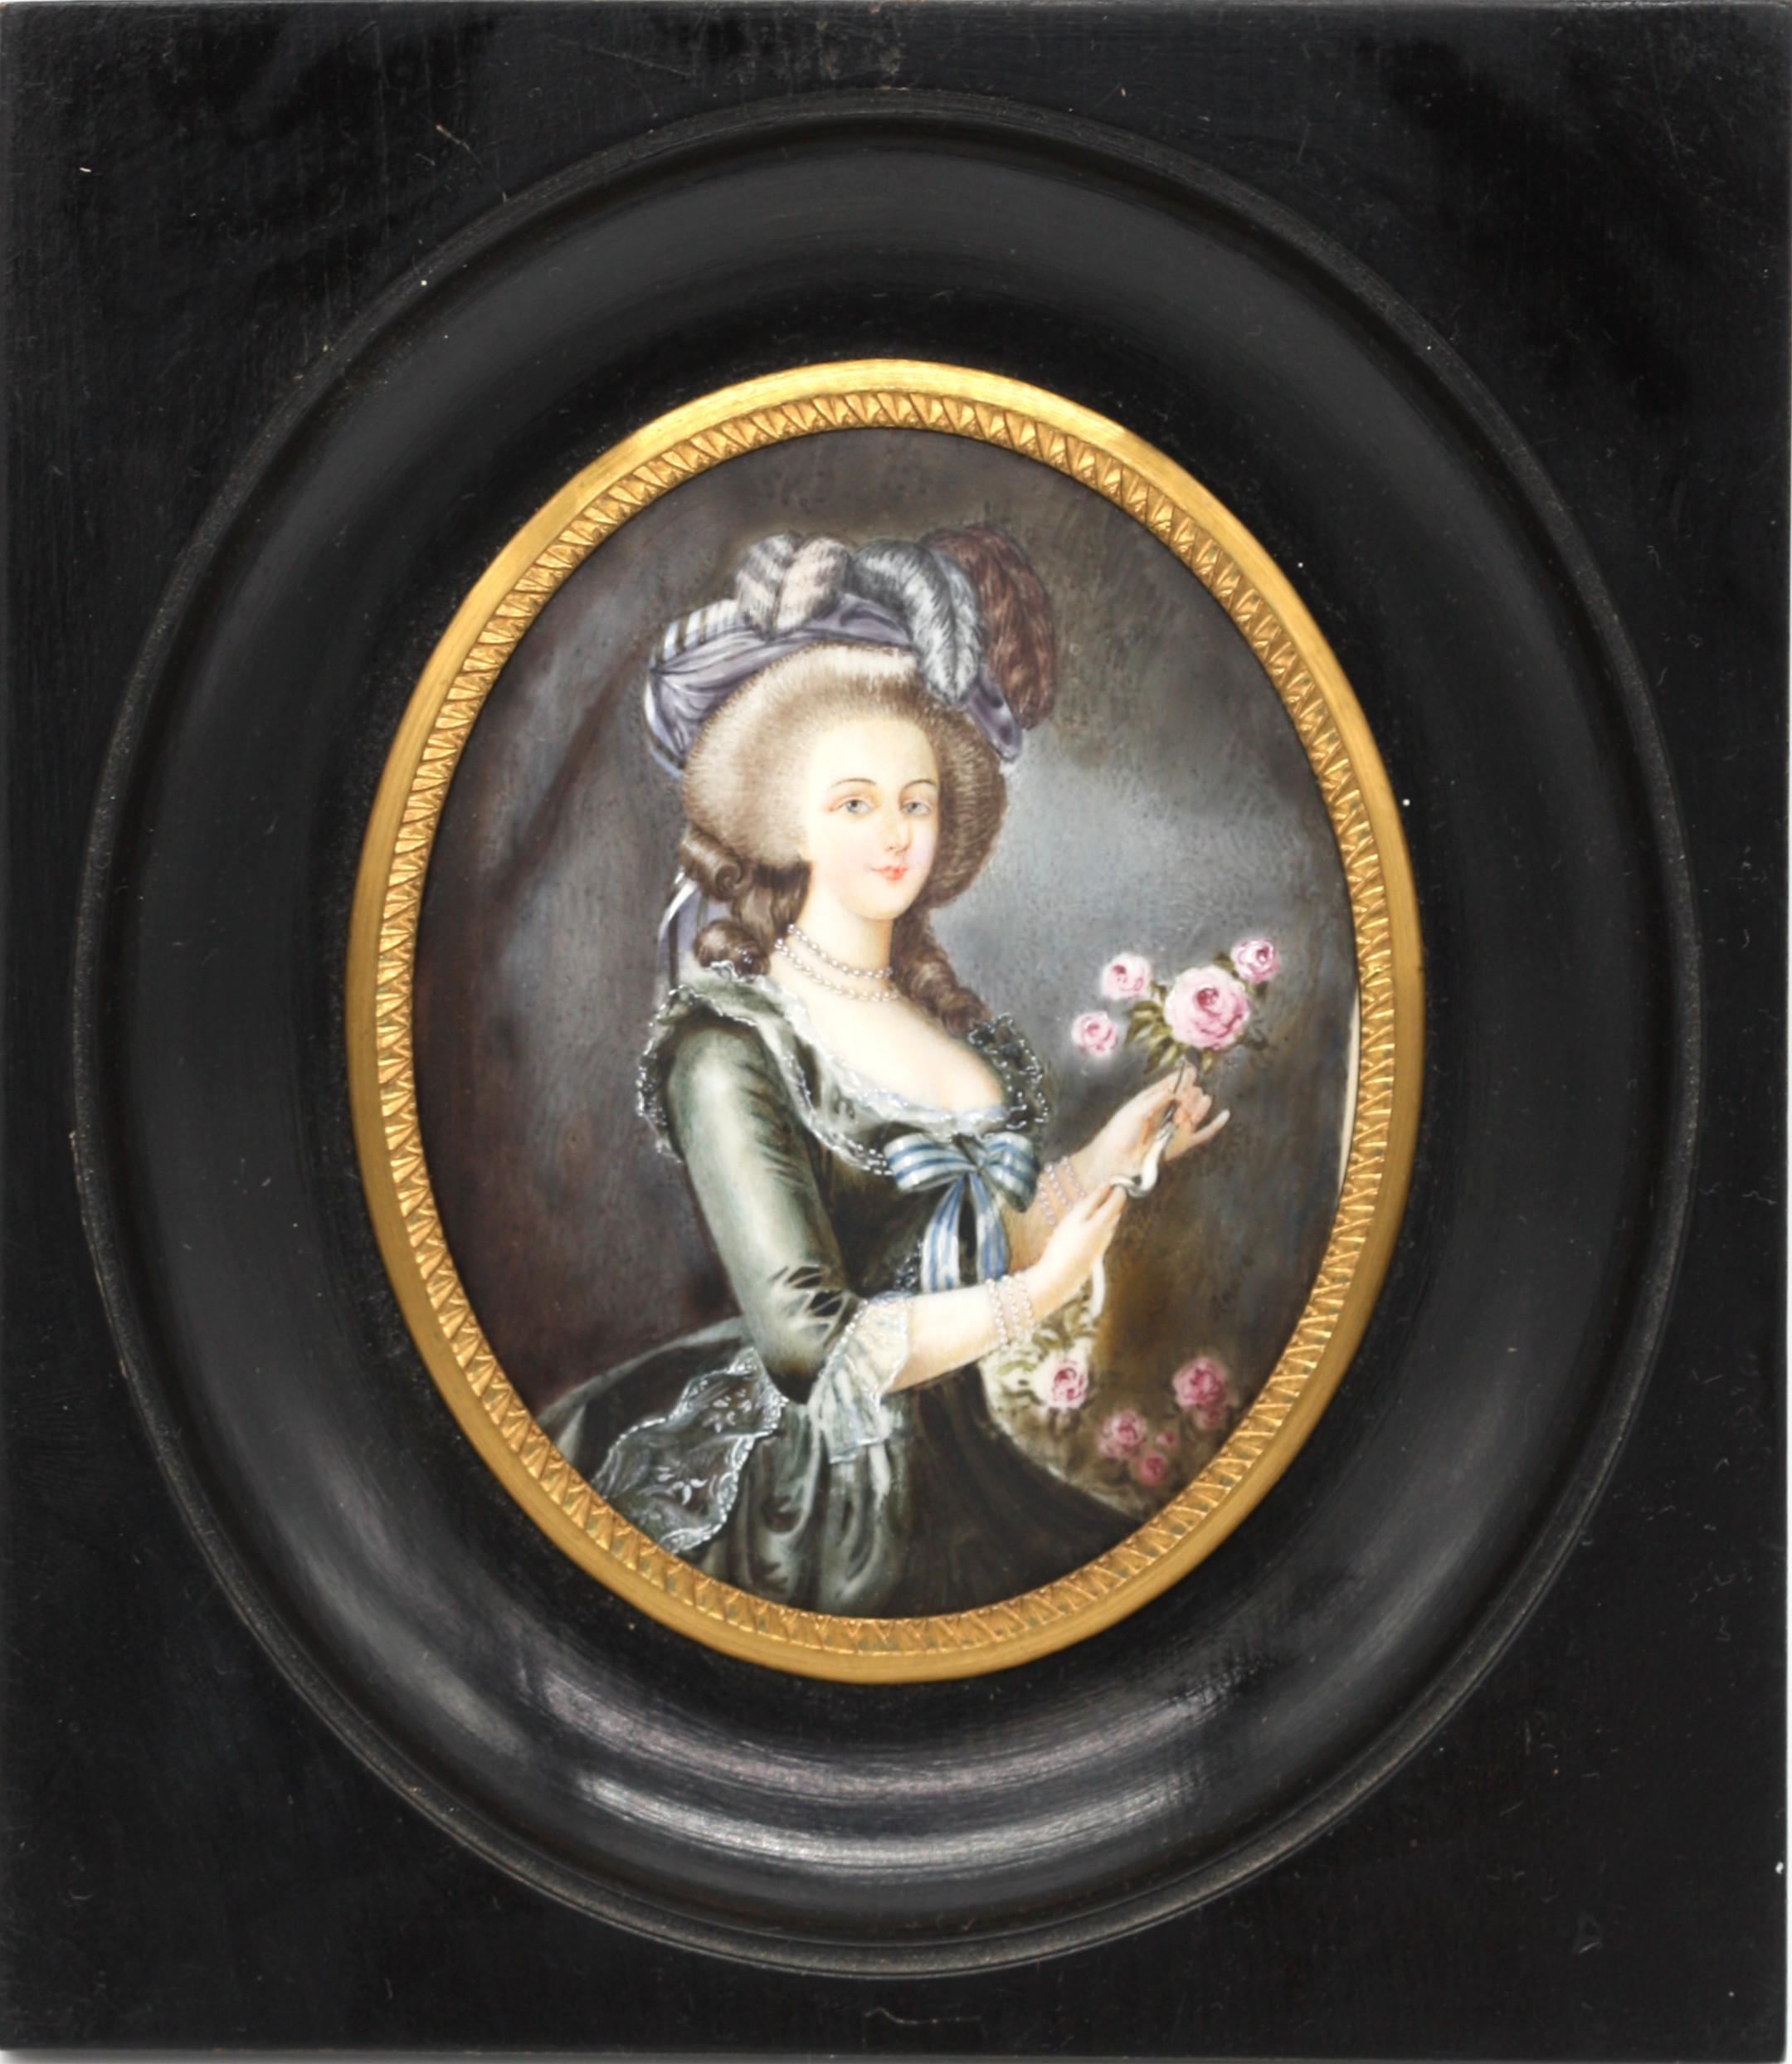 Peinture miniature
Européen. Circa 1900. 
Marie Antoinette peinte par André, signée. 
D'après l'original de Charles Le Brun (1619-1690)
Mesurant 3,75 x 3 in. (9,52 x 7,62 cm.).